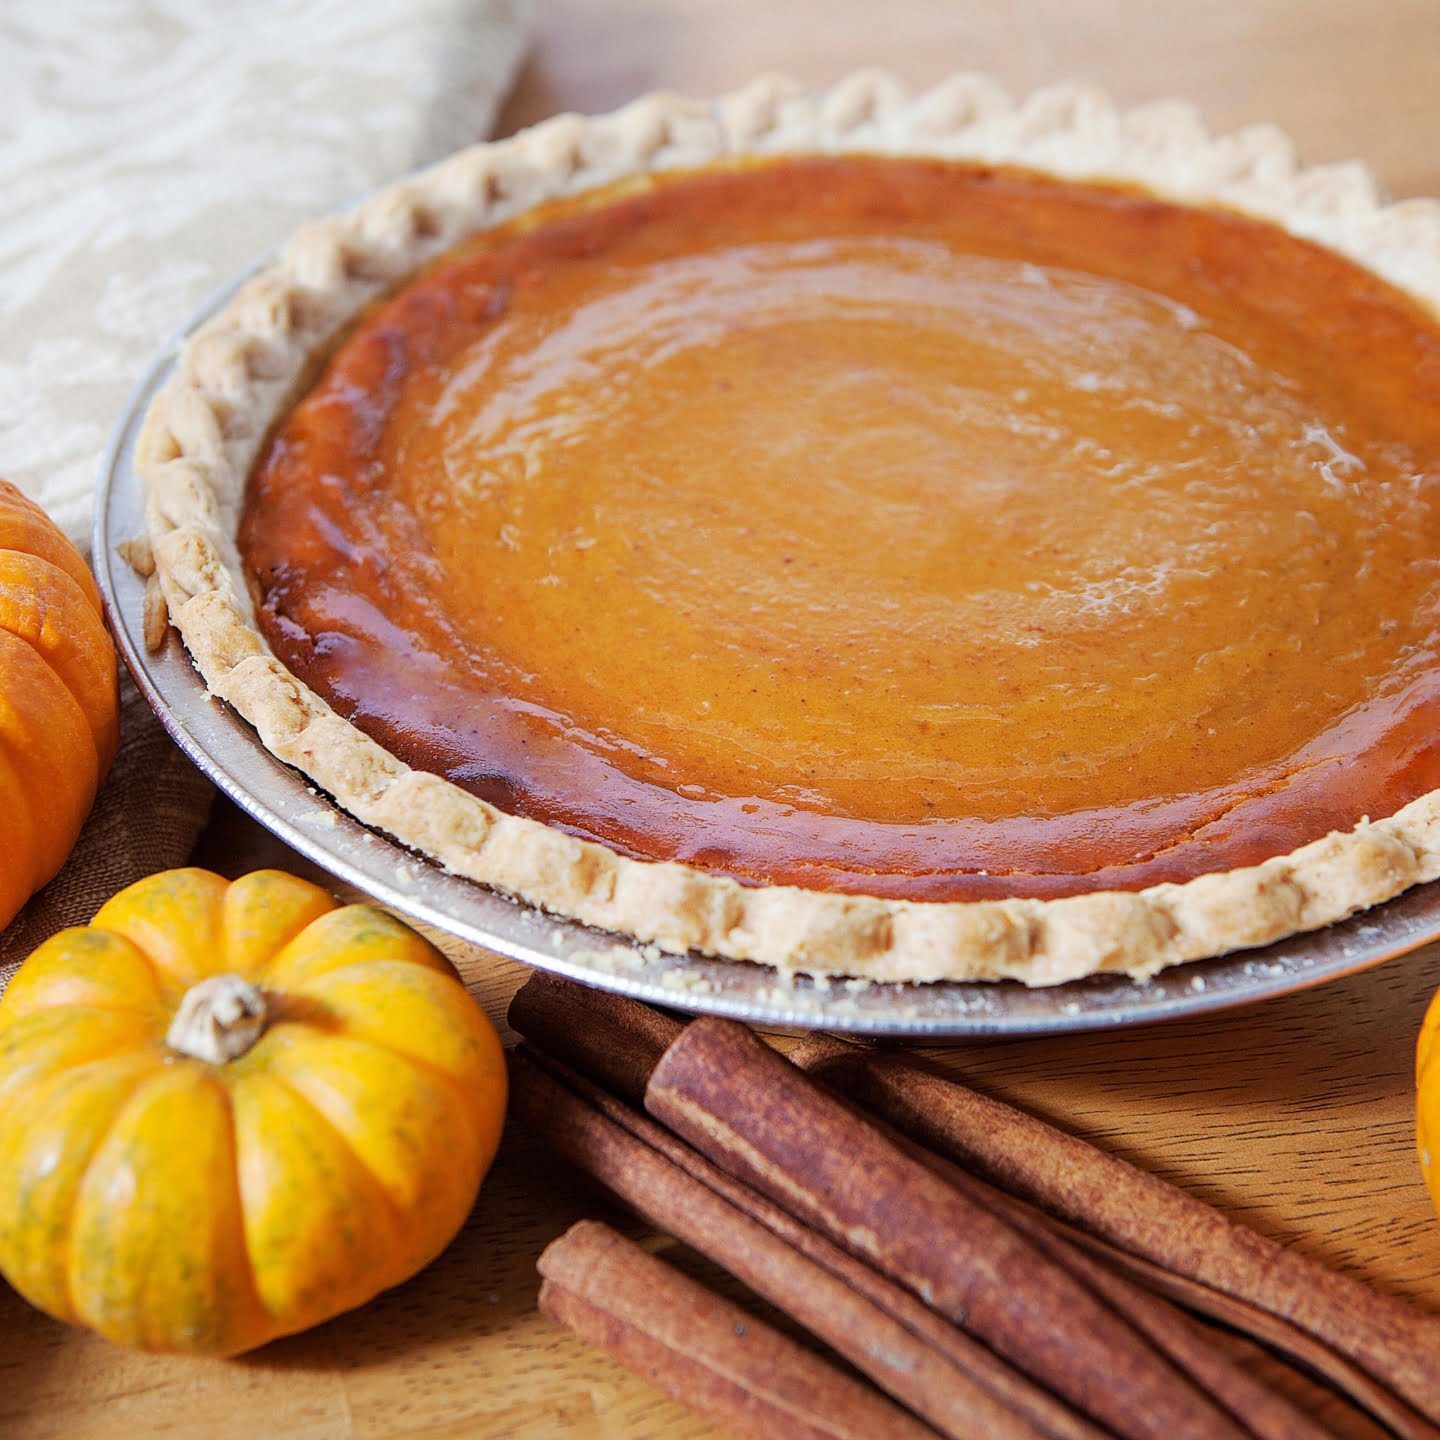 Best pumpkin dessert recipes featured